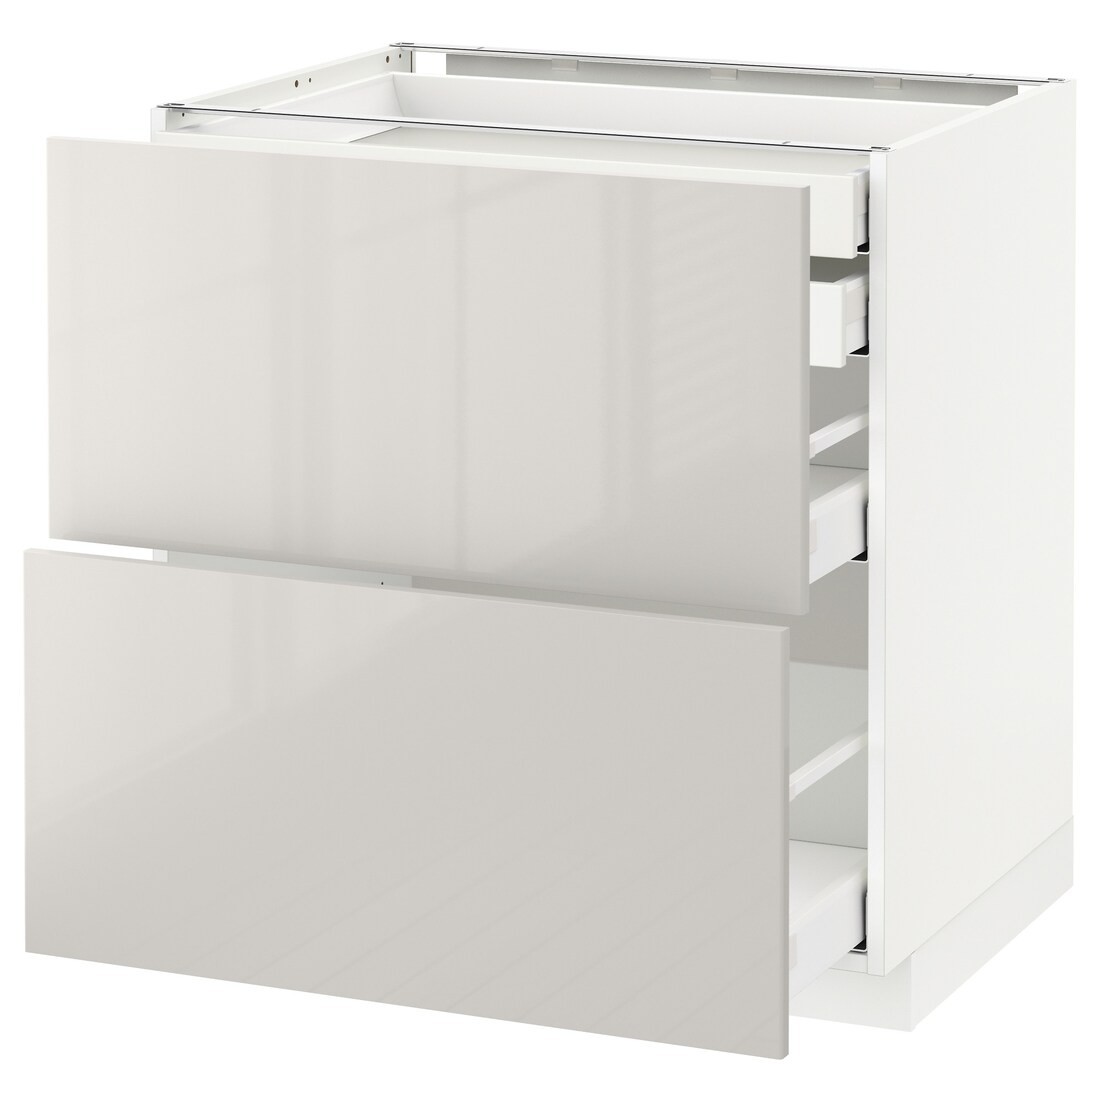 IKEA METOD МЕТОД / MAXIMERA МАКСИМЕРА Напольный шкаф с ящиками, белый / Ringhult светло-серый, 80x60 см 09141802 | 091.418.02